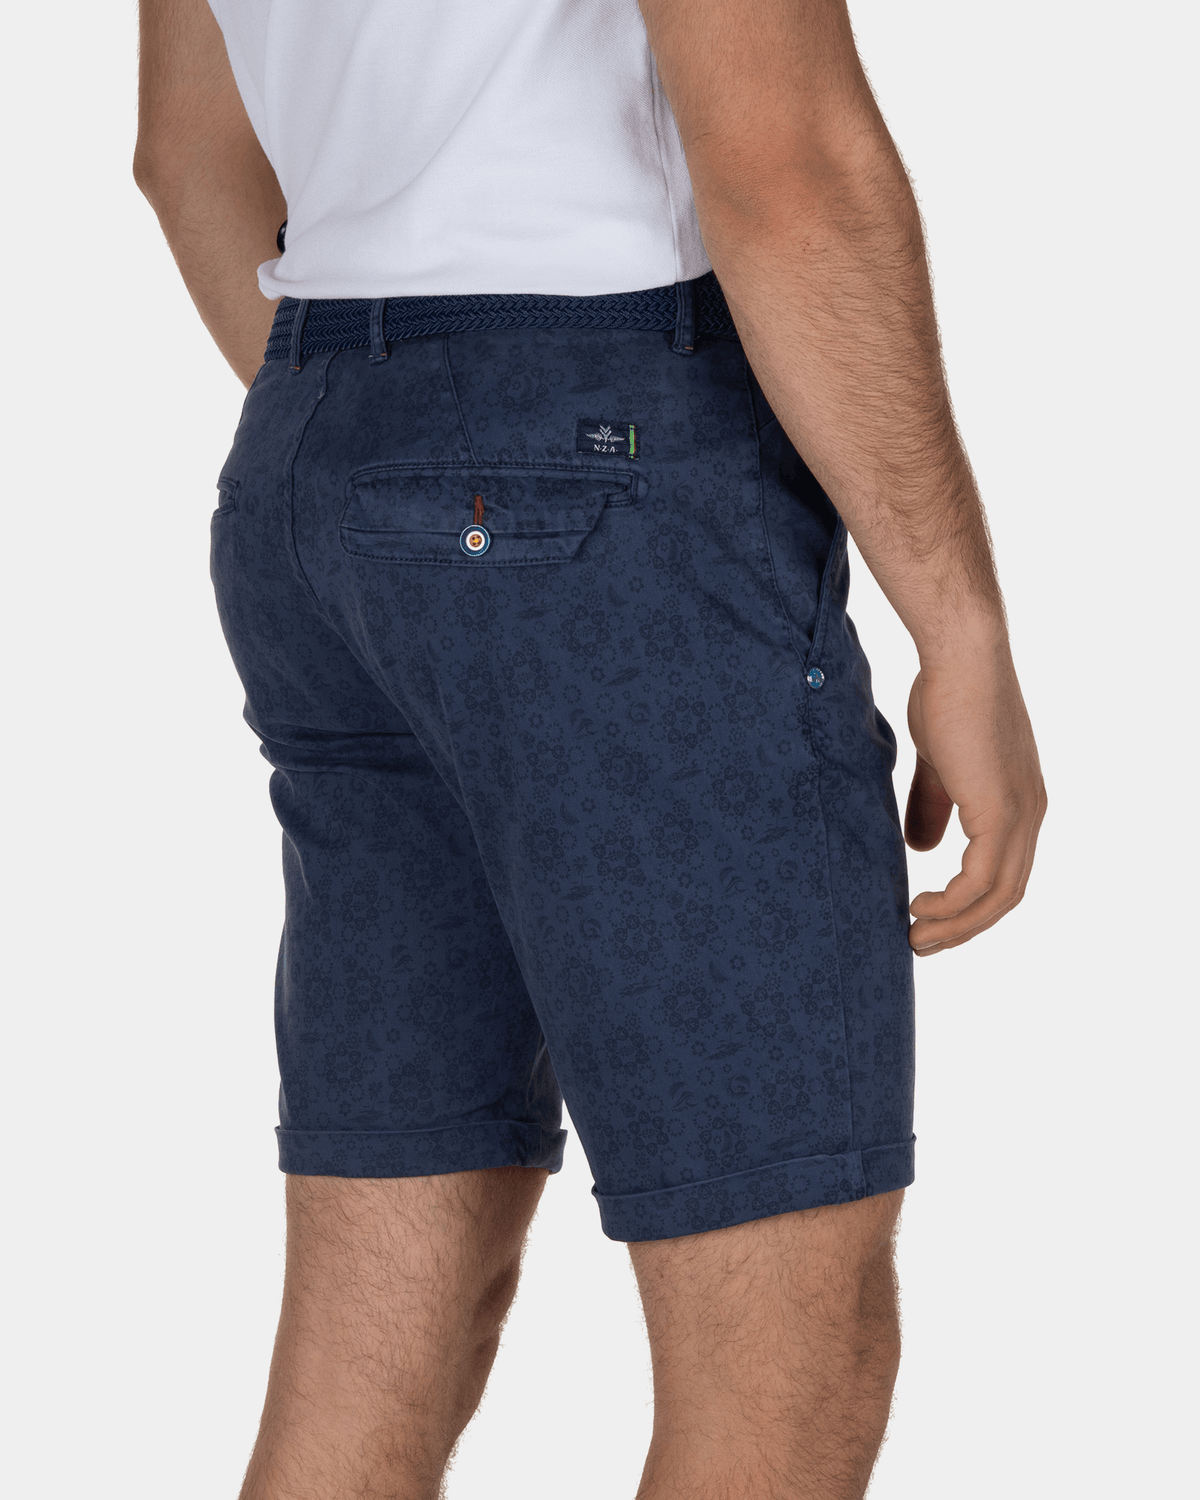 Shorts mit Aufdruck Pimmerton - Urban Navy